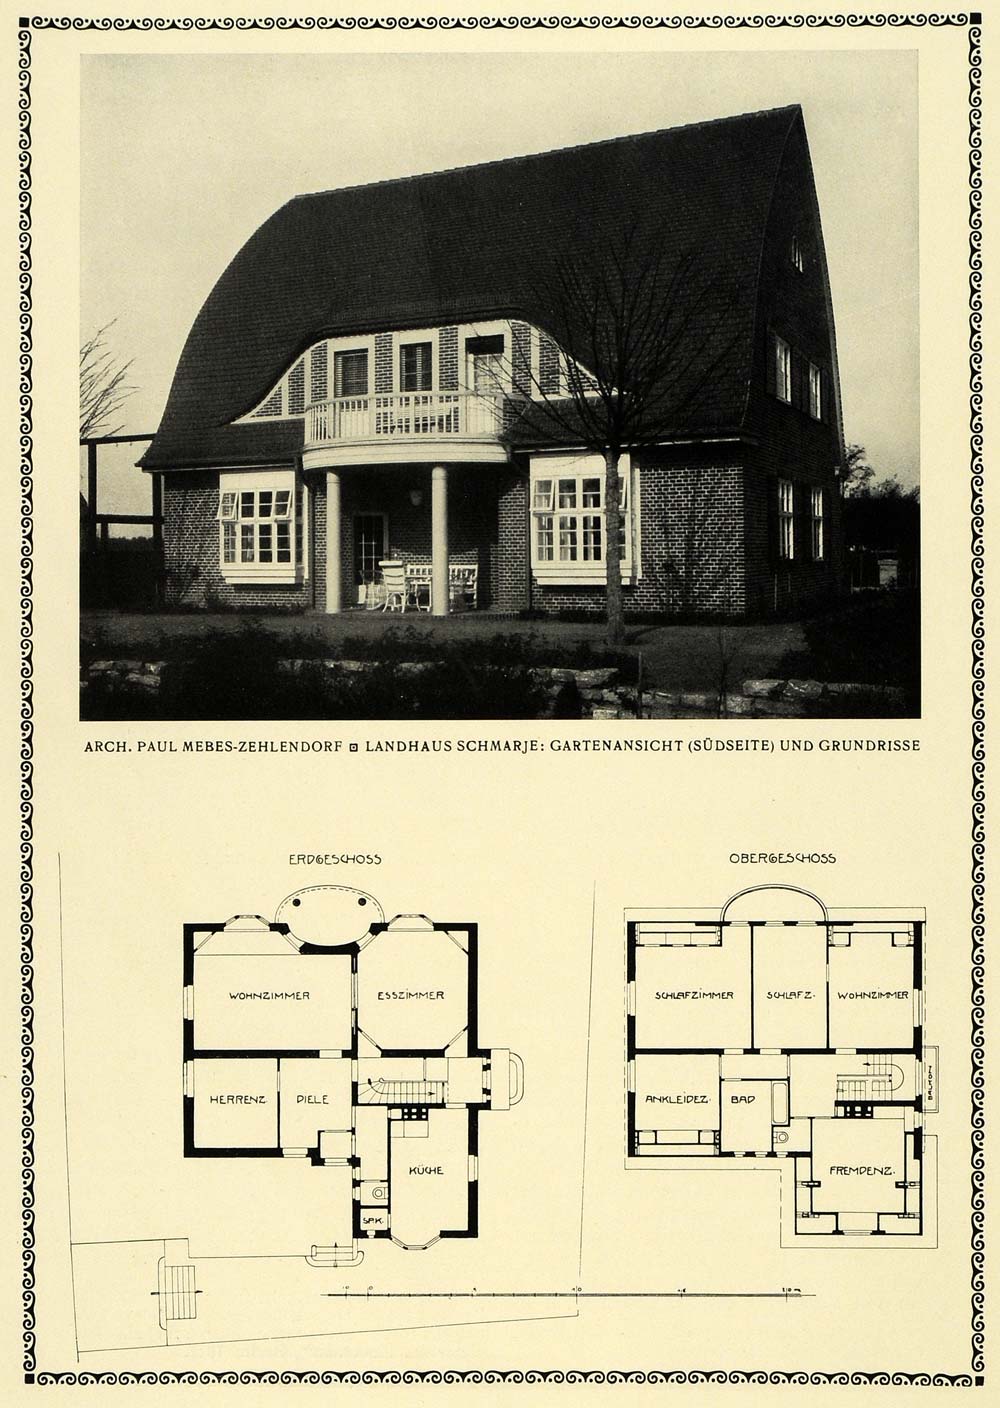 1913 Print Garden View Floor Plan Architecture Schmarje Paul Mebes Building DKU1